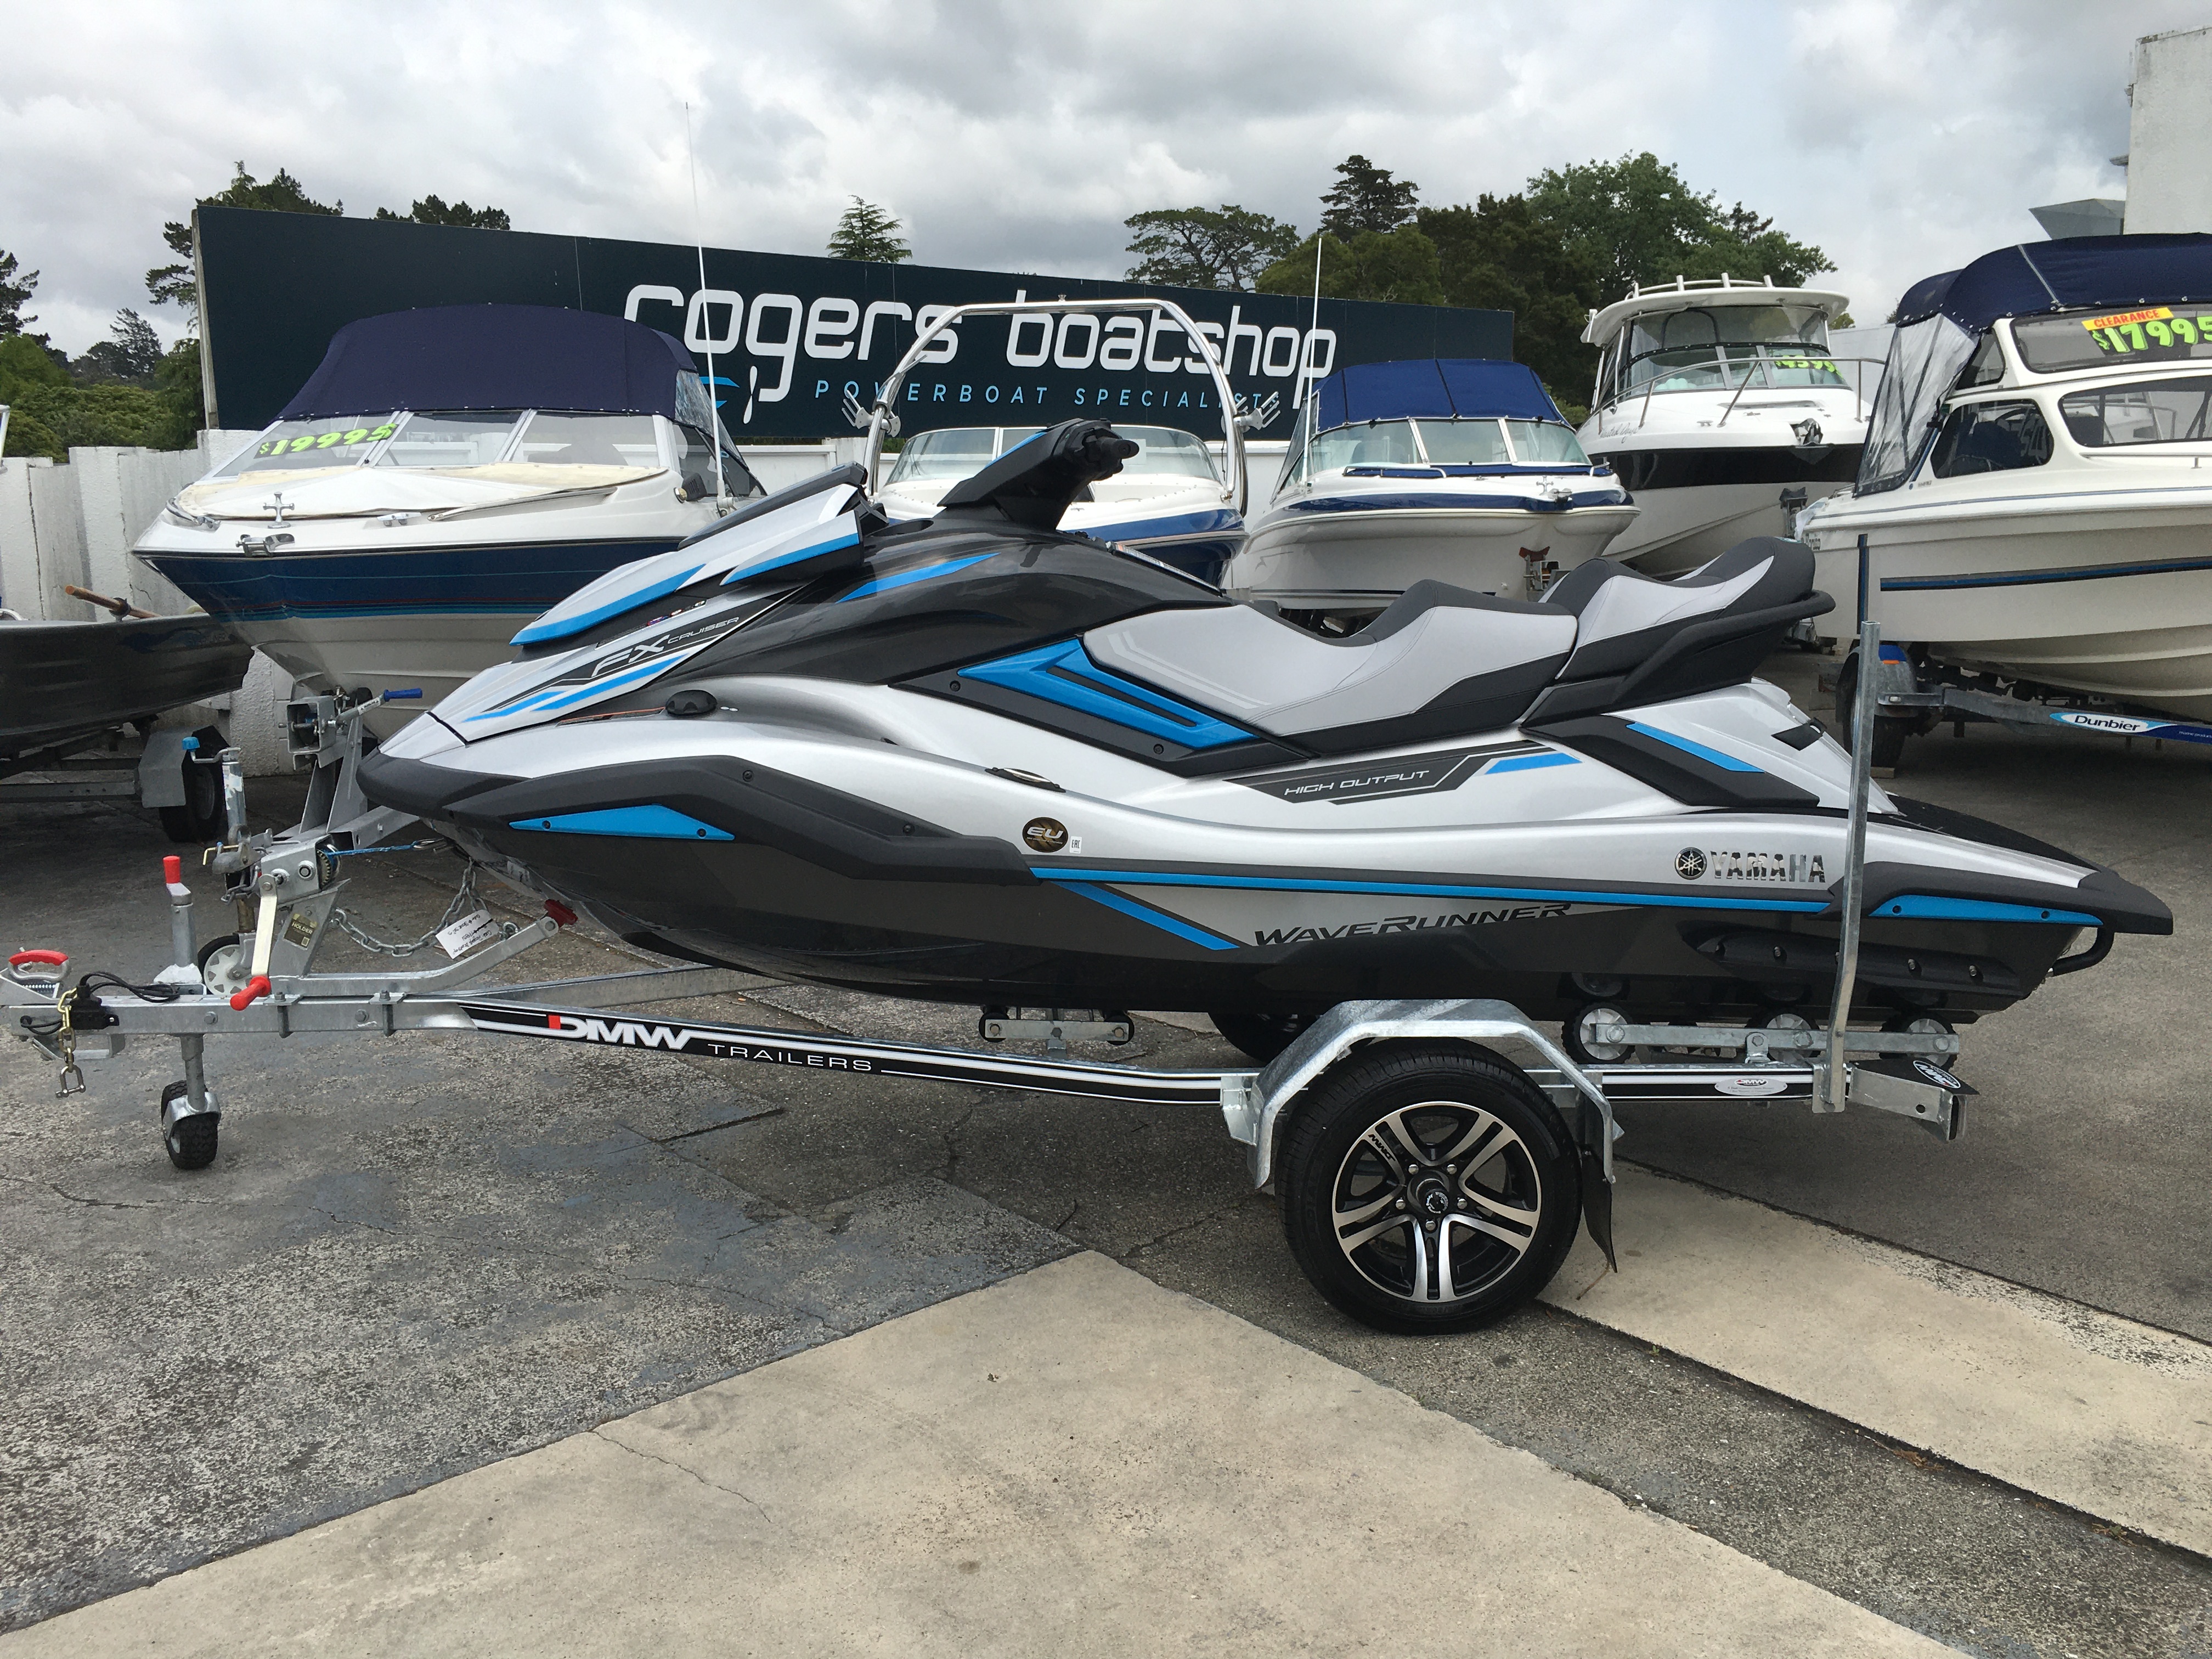 Rogers Boatshop: Yamaha / FX Cruiser HO / 2020